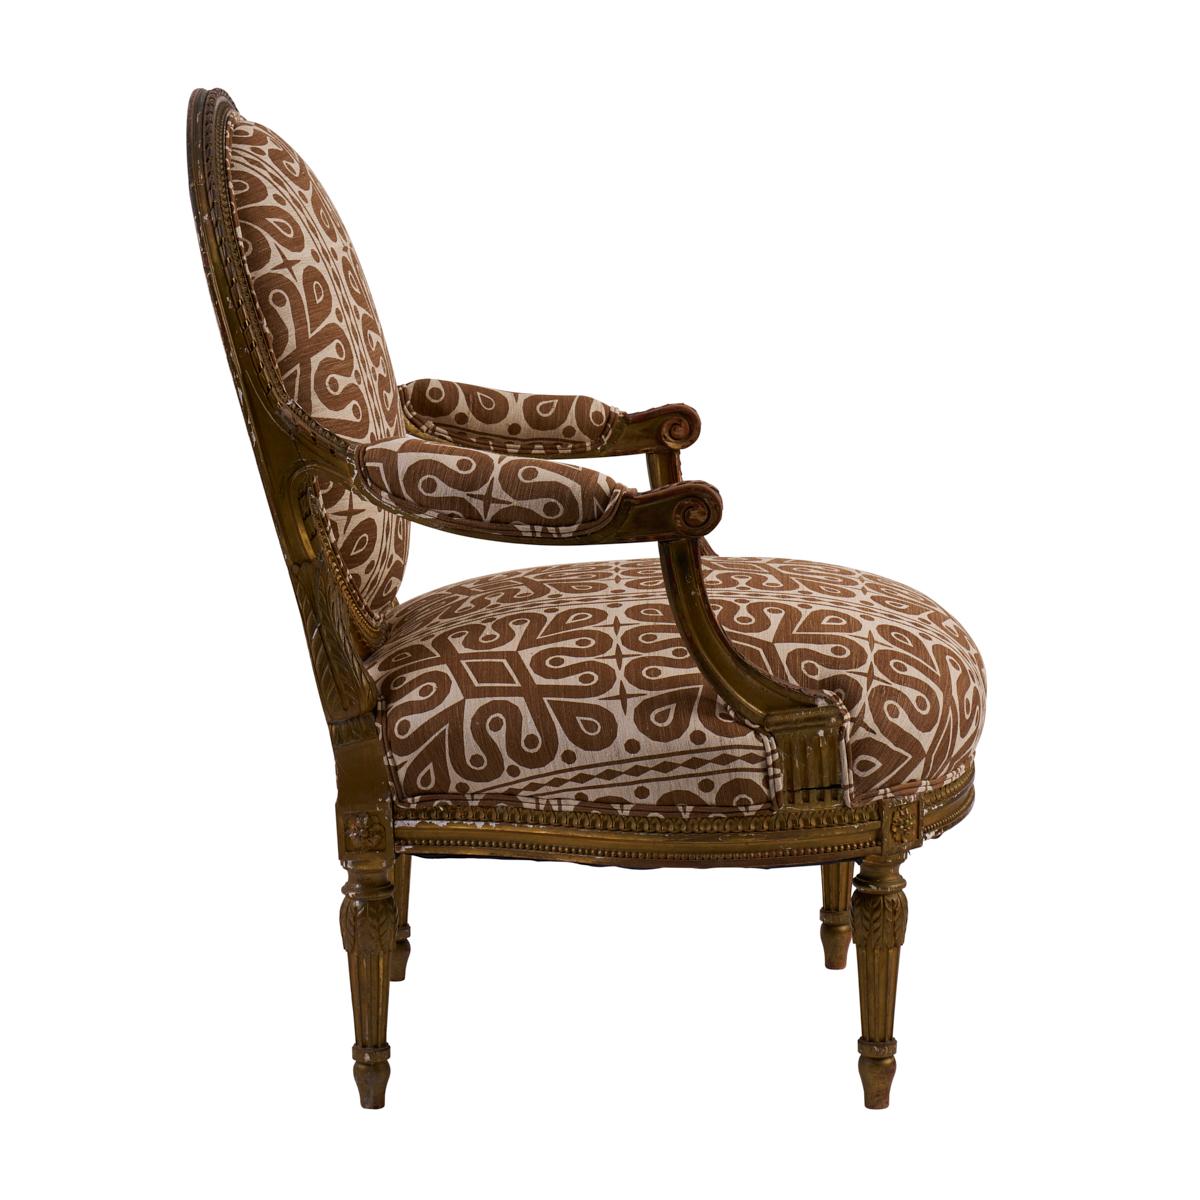 Découverts dans le sud de la France, ces fauteuils élégants du XIXe siècle présentent un dossier ovale, des accoudoirs à volutes et des pieds droits, caractéristiques des pièces de style Louis XVI. Nouvellement revêtues du tissu Borneo Silk de